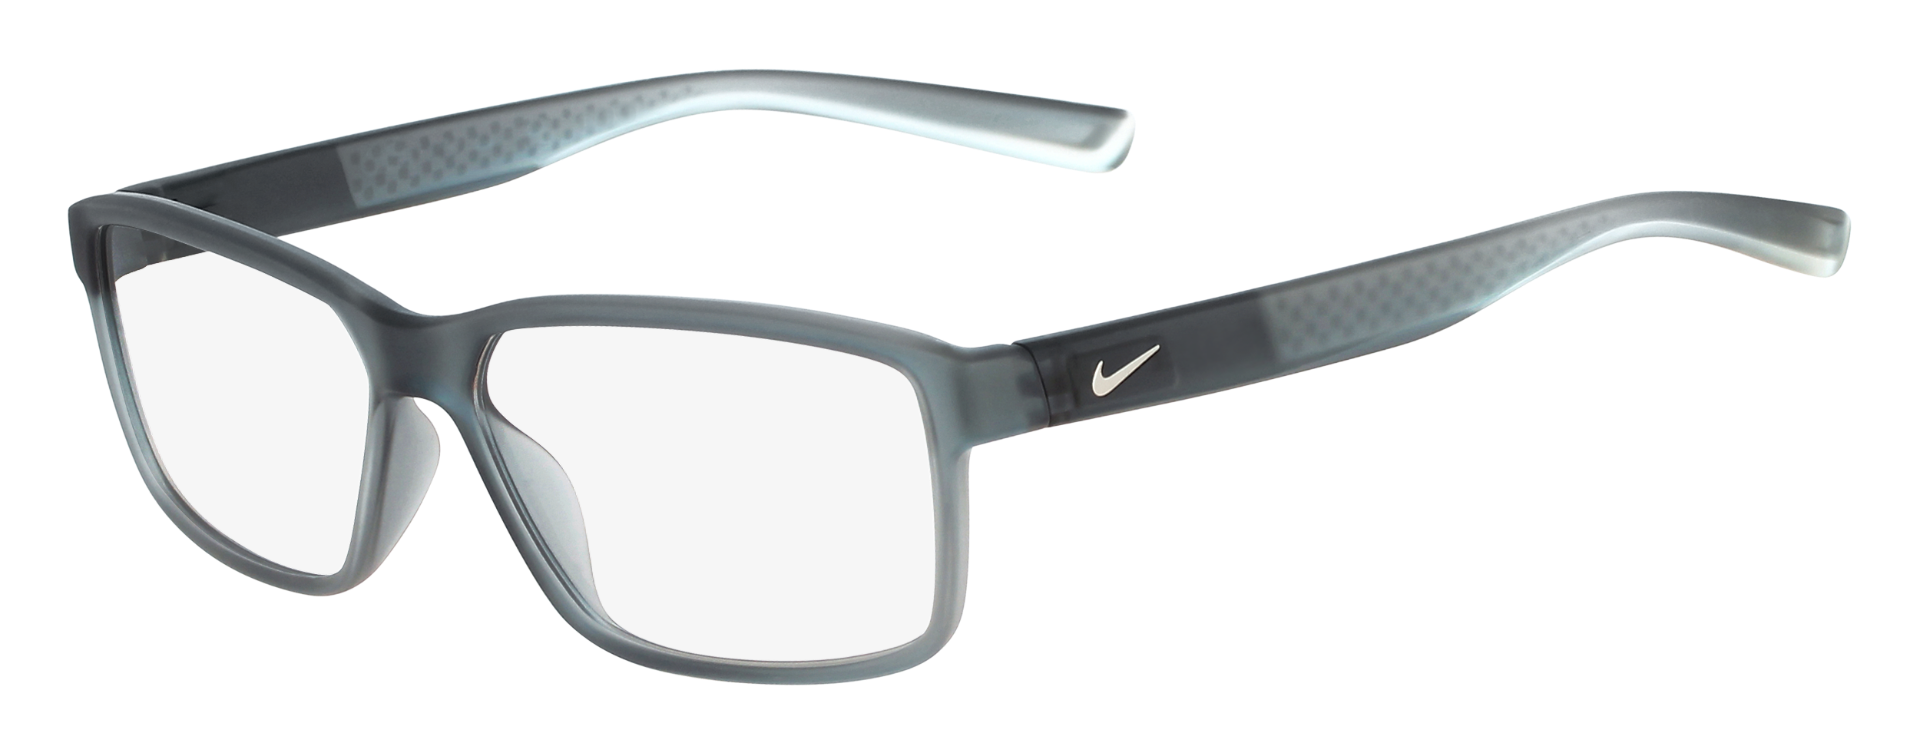 Men's Nike eyeglasses the 7092 frame. Full-rim frame in gray with rectangular clear lenses.